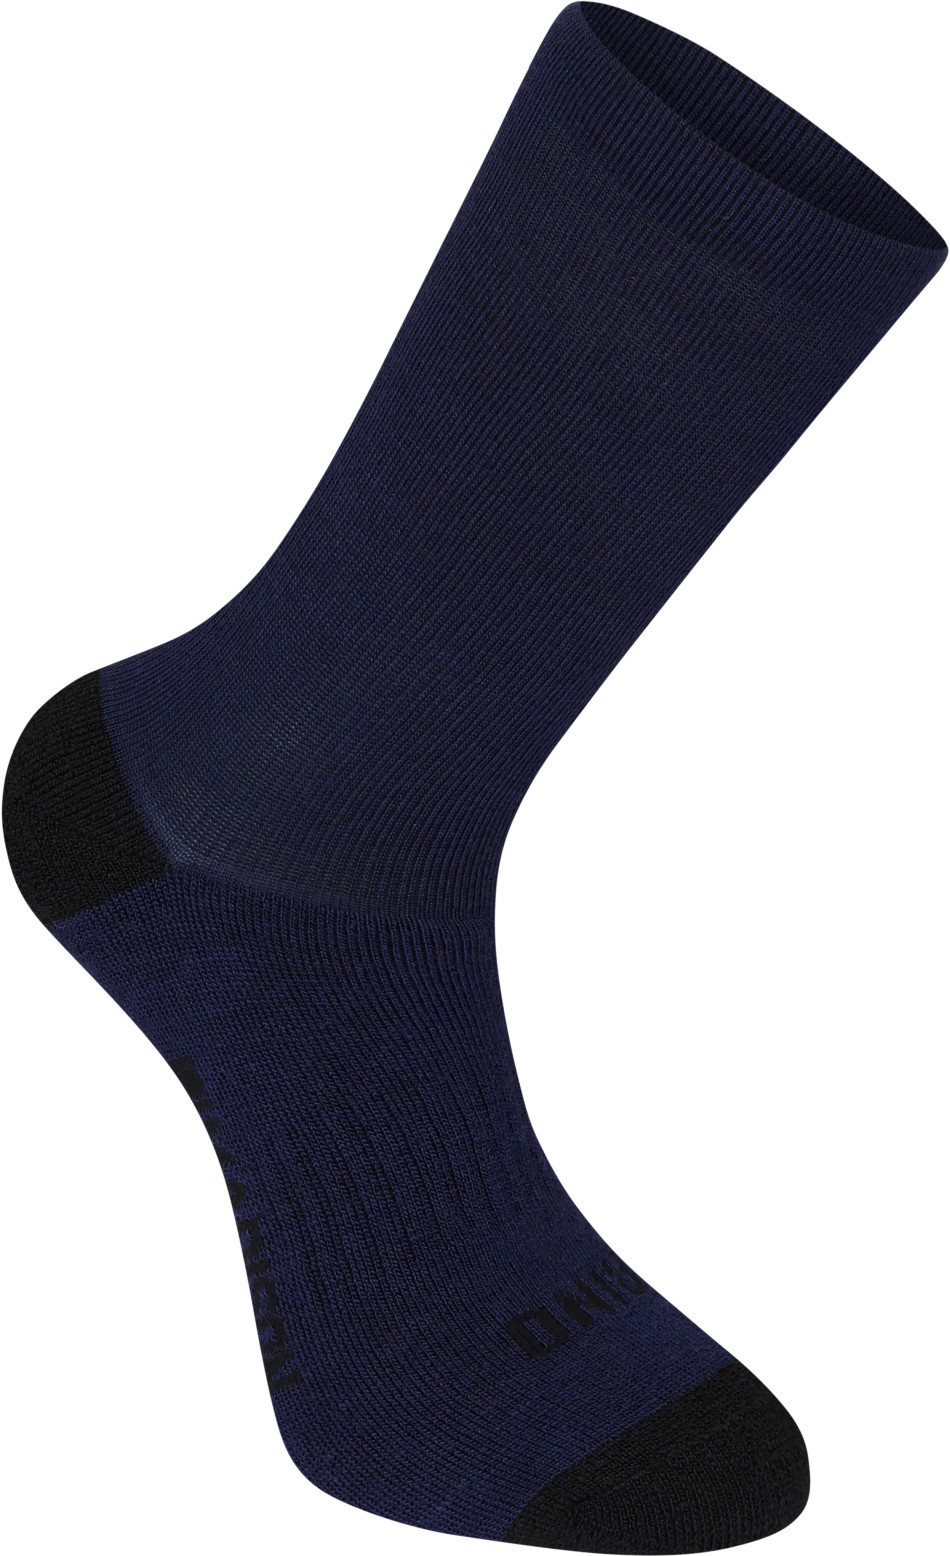 Madison Isoler Deep Winter Socks Blue